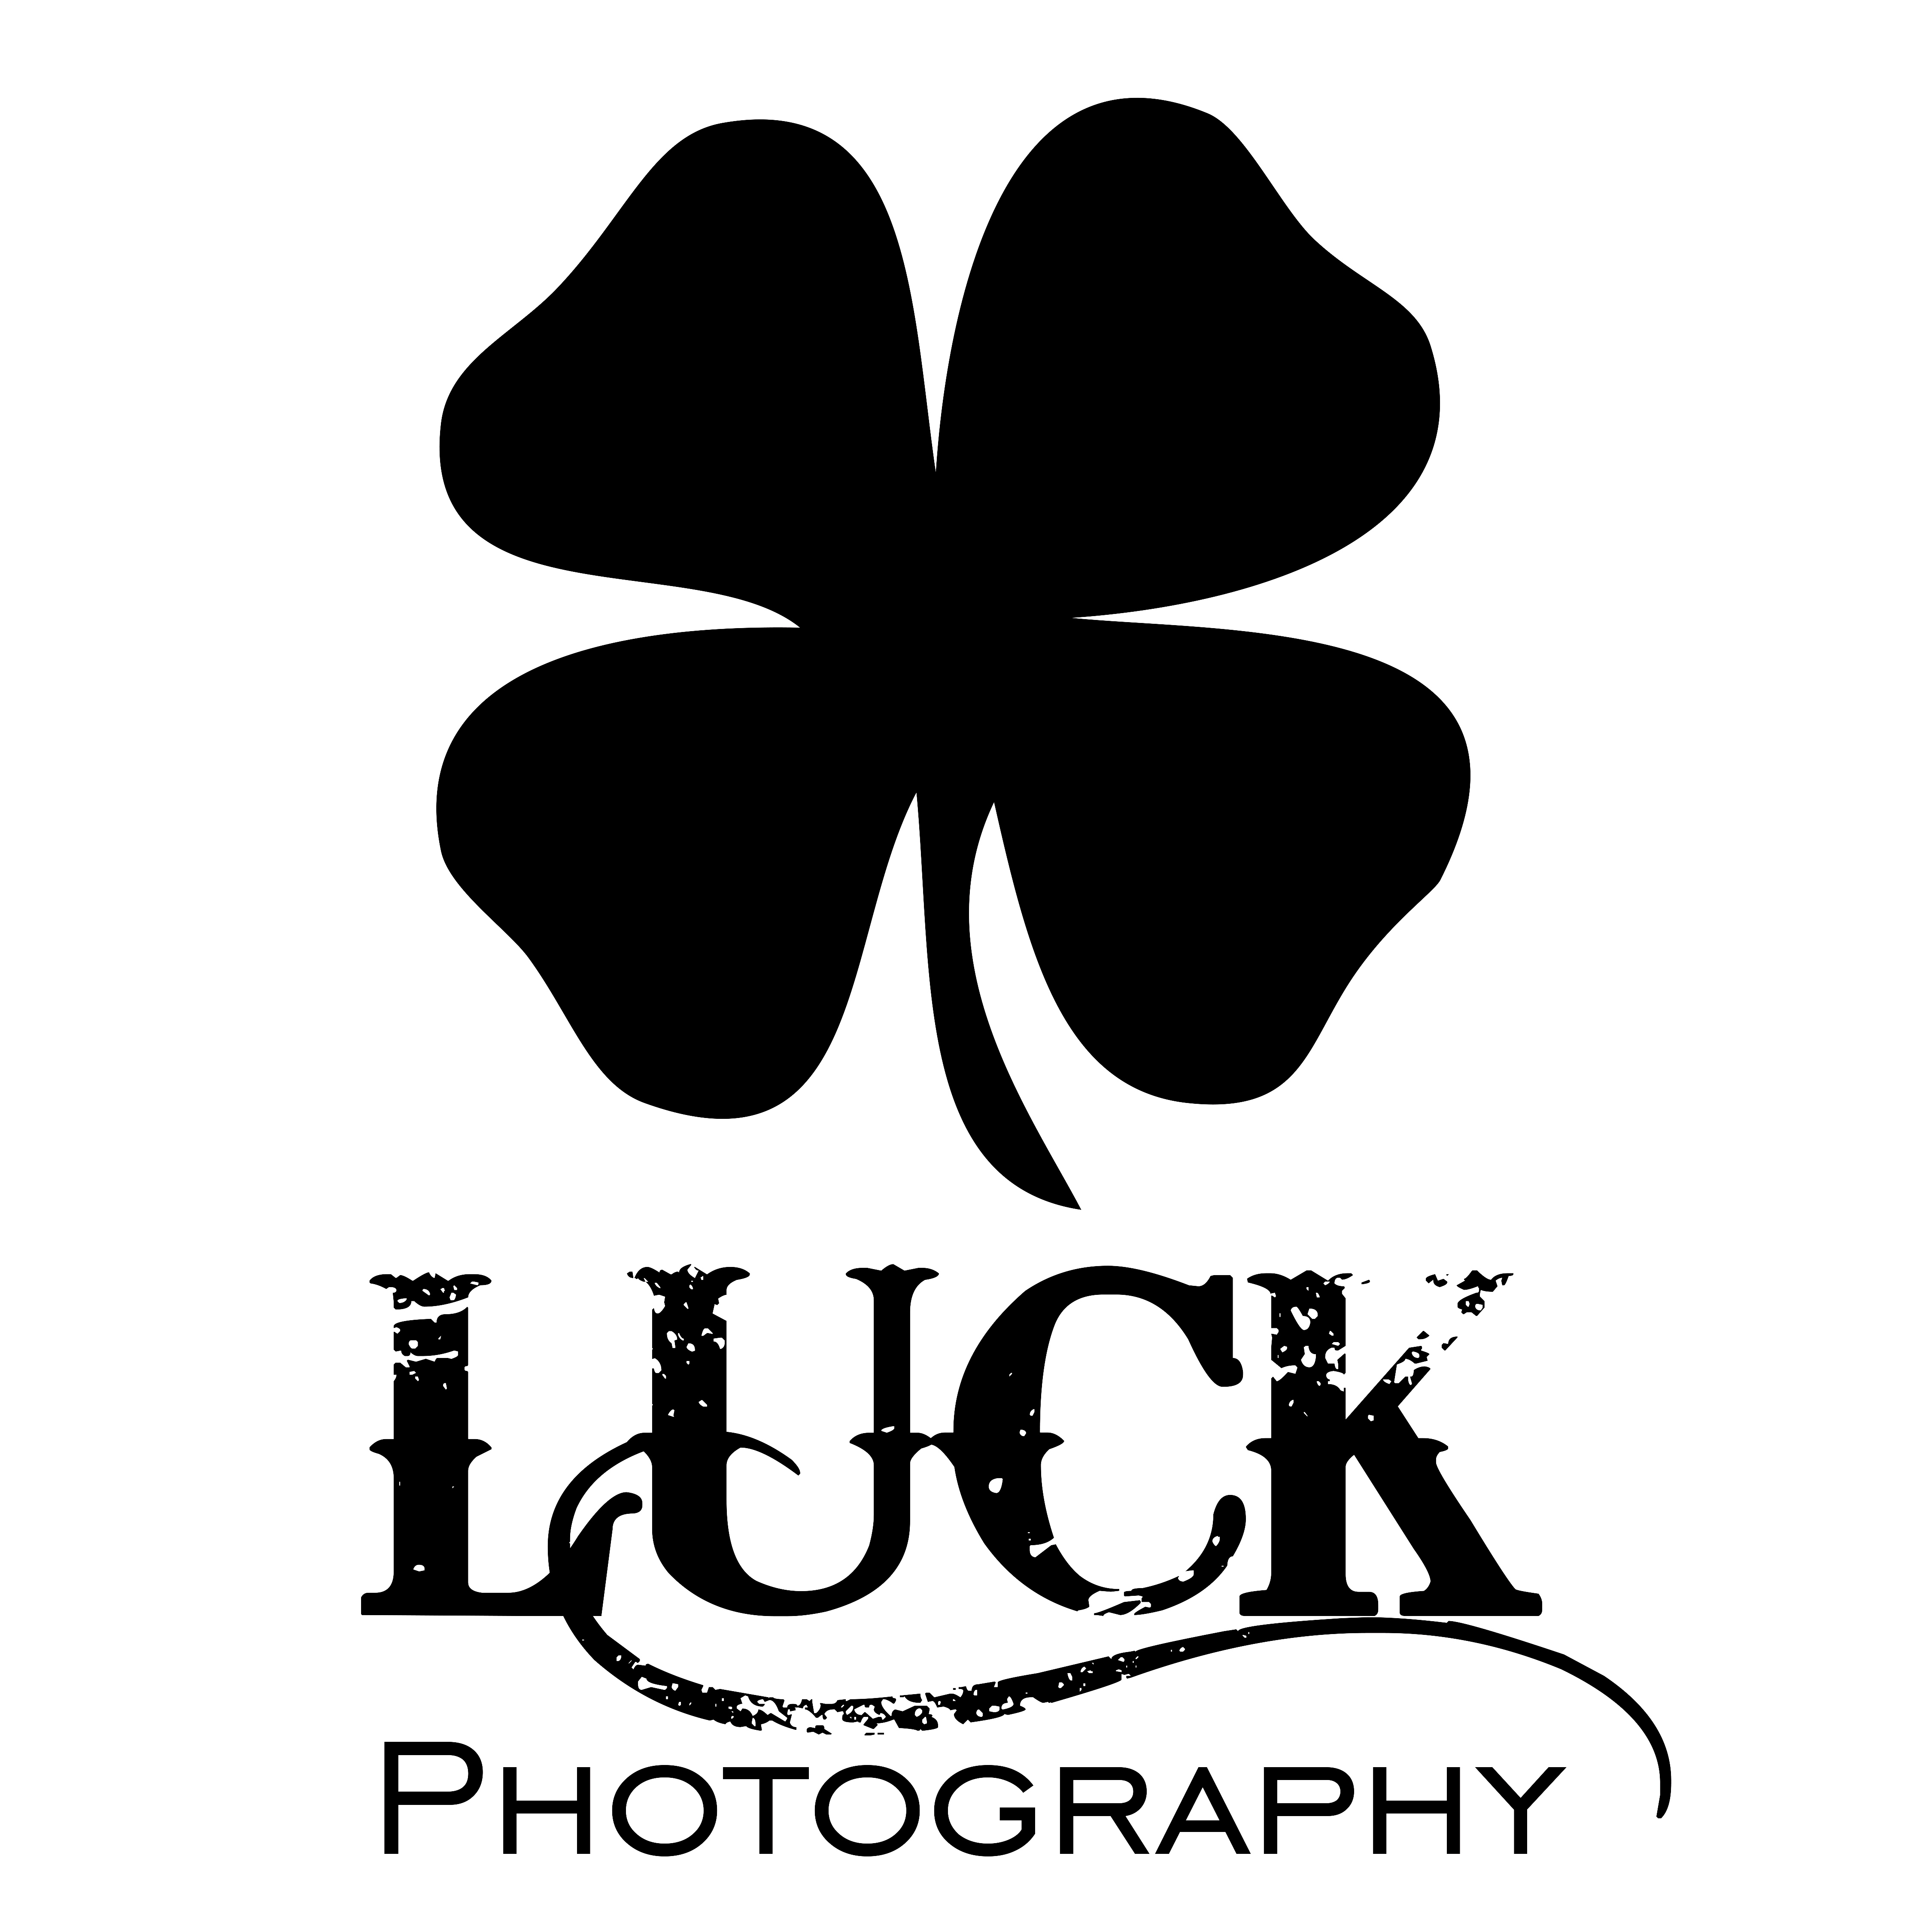 Luck Photography logo - Sarah Cook